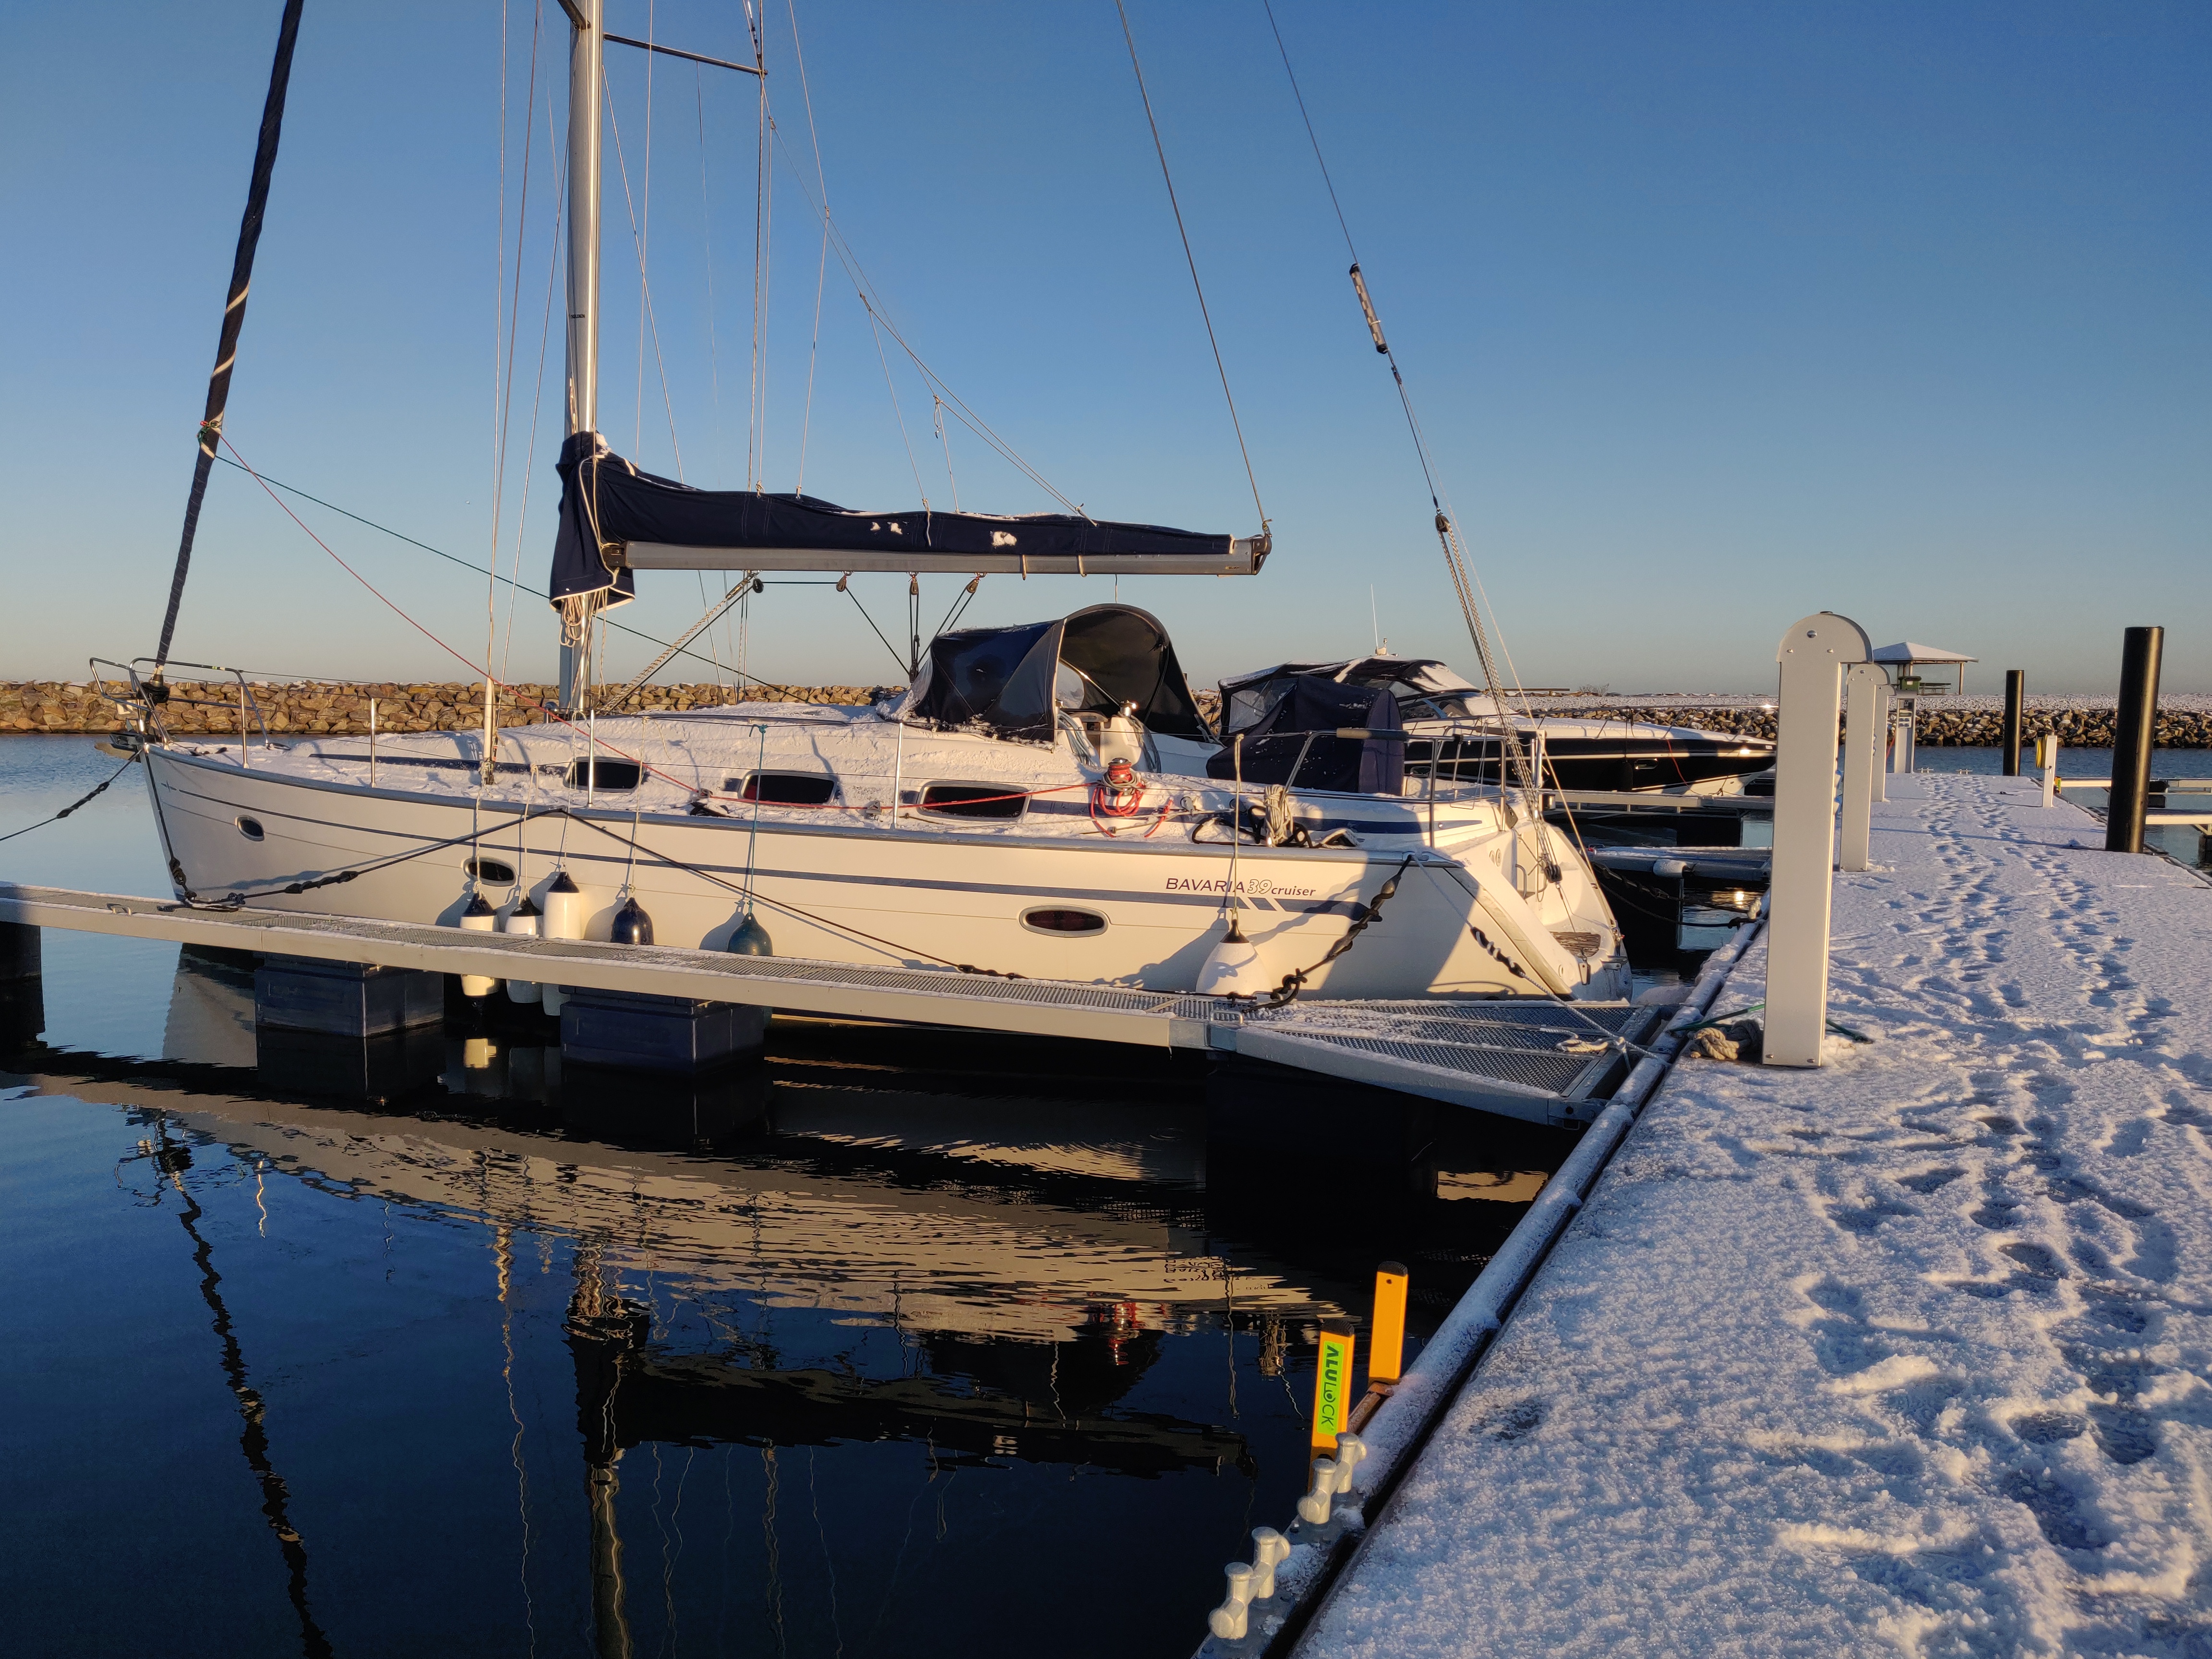 sejlbåd fortøjret i vandet om vinteren med frost og sne